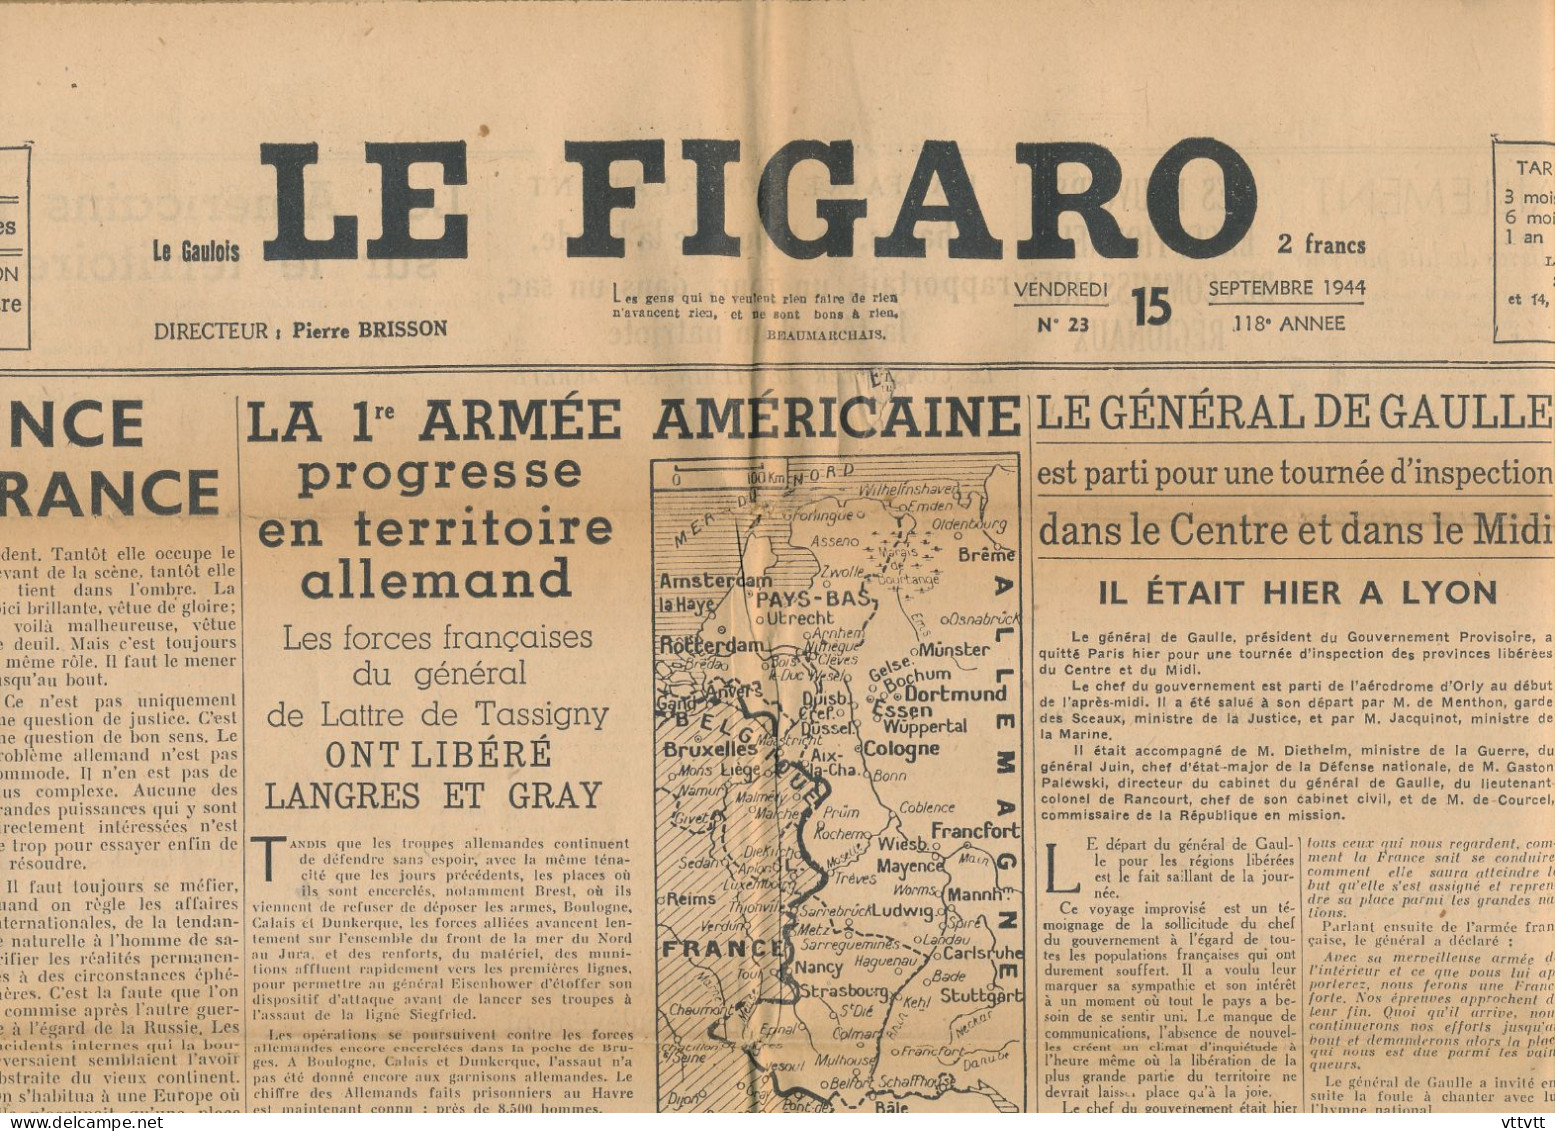 LE FIGARO, Vendredi 15 Septembre 1944, N° 23, Libération De Langres Et Gray, De Gaulle à Lyon, 1ere Armée Américaine - Allgemeine Literatur